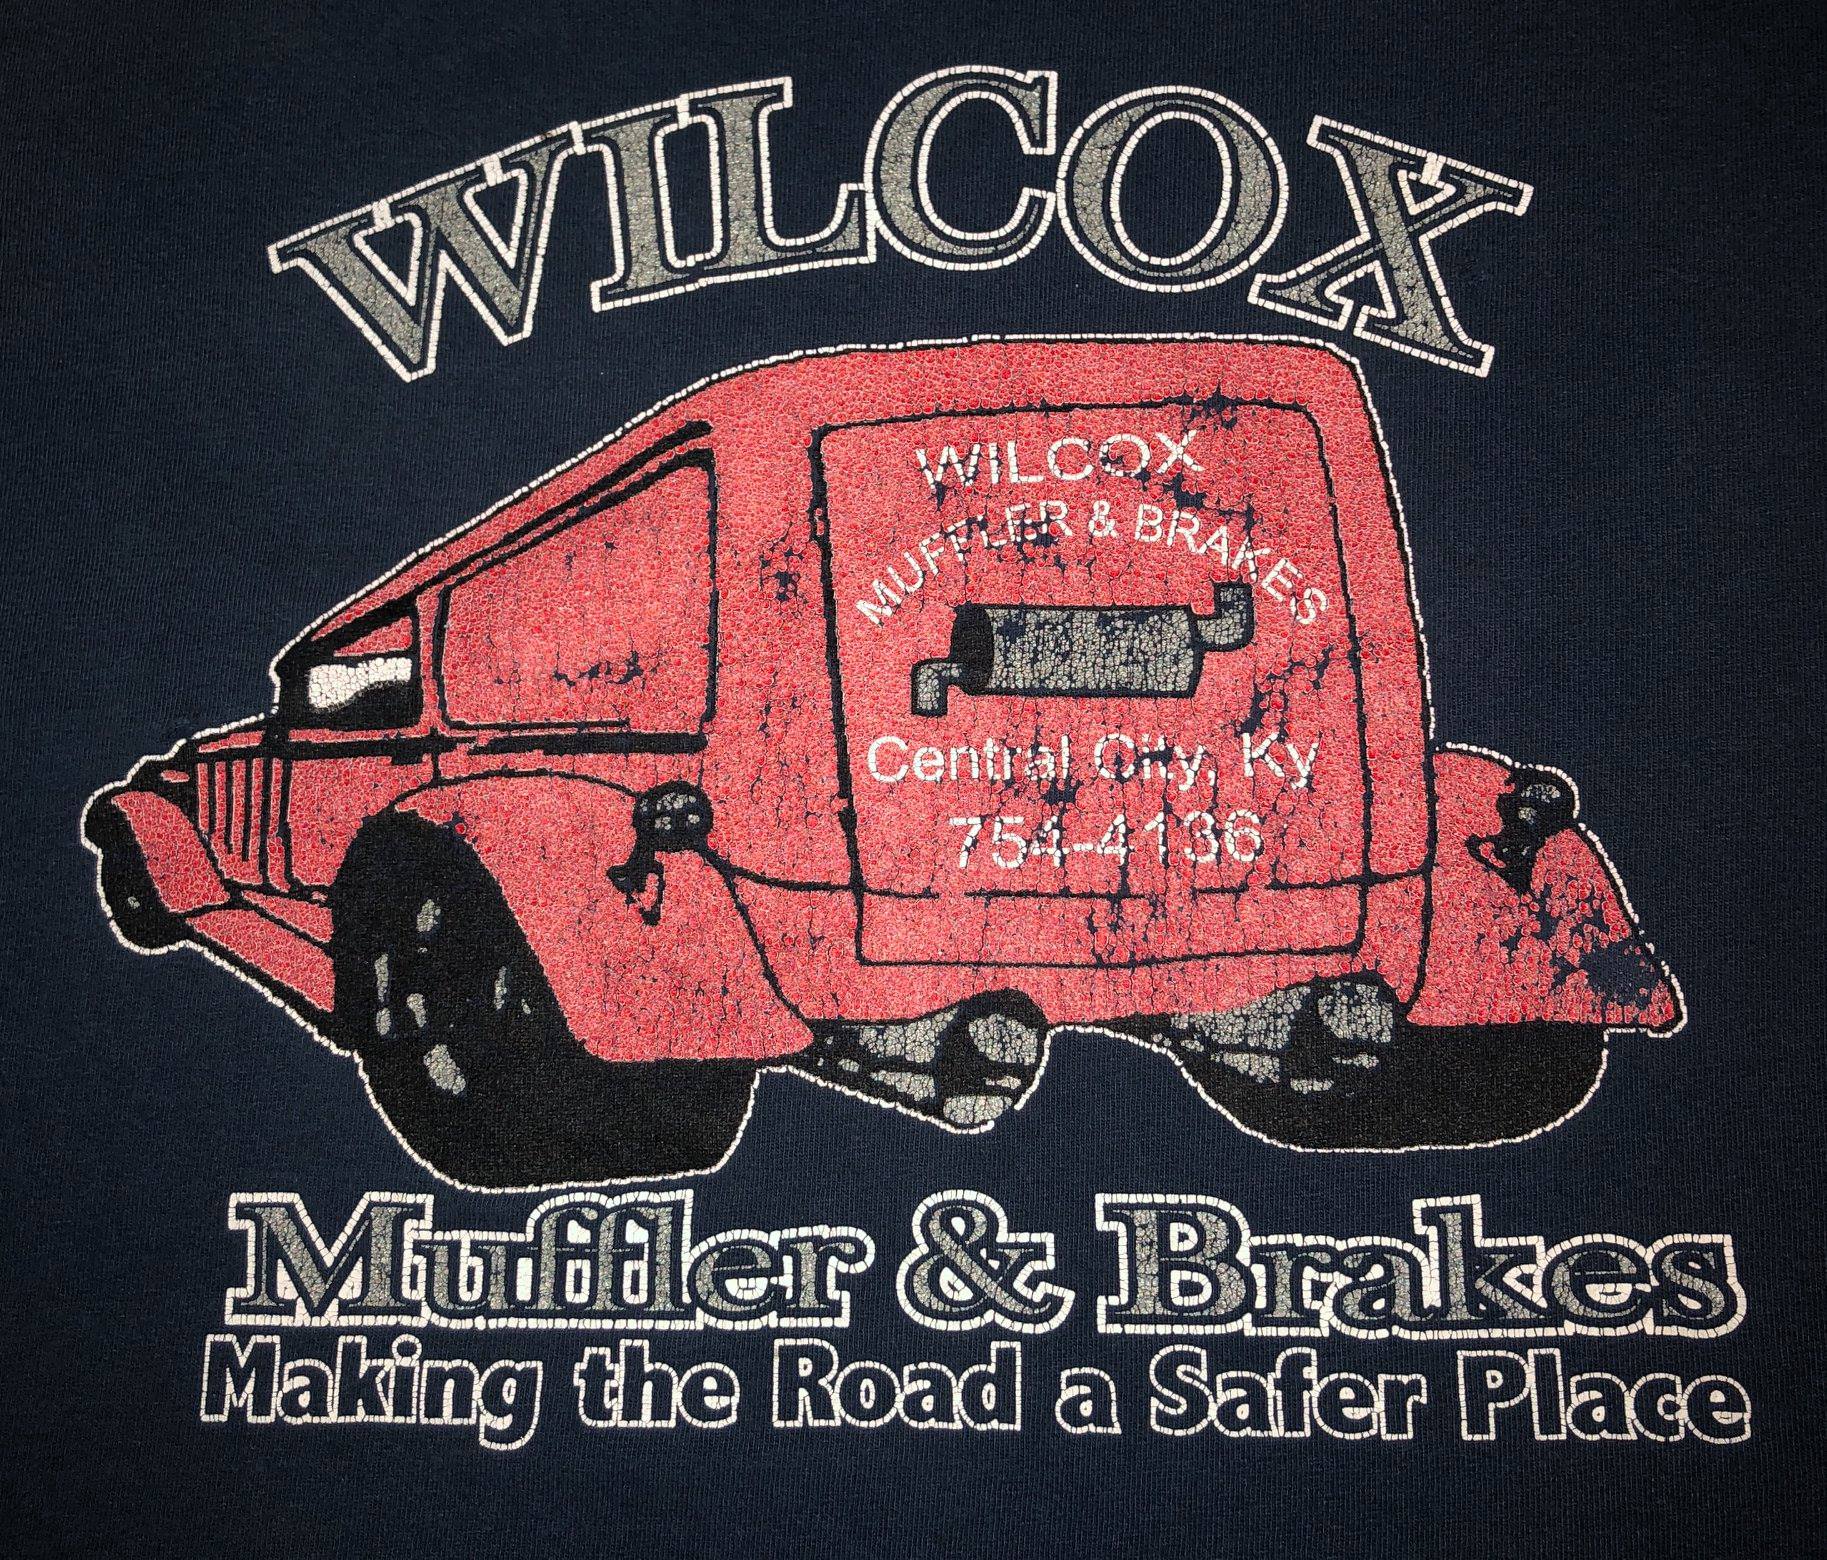 Wilcox Muffler & Brakes